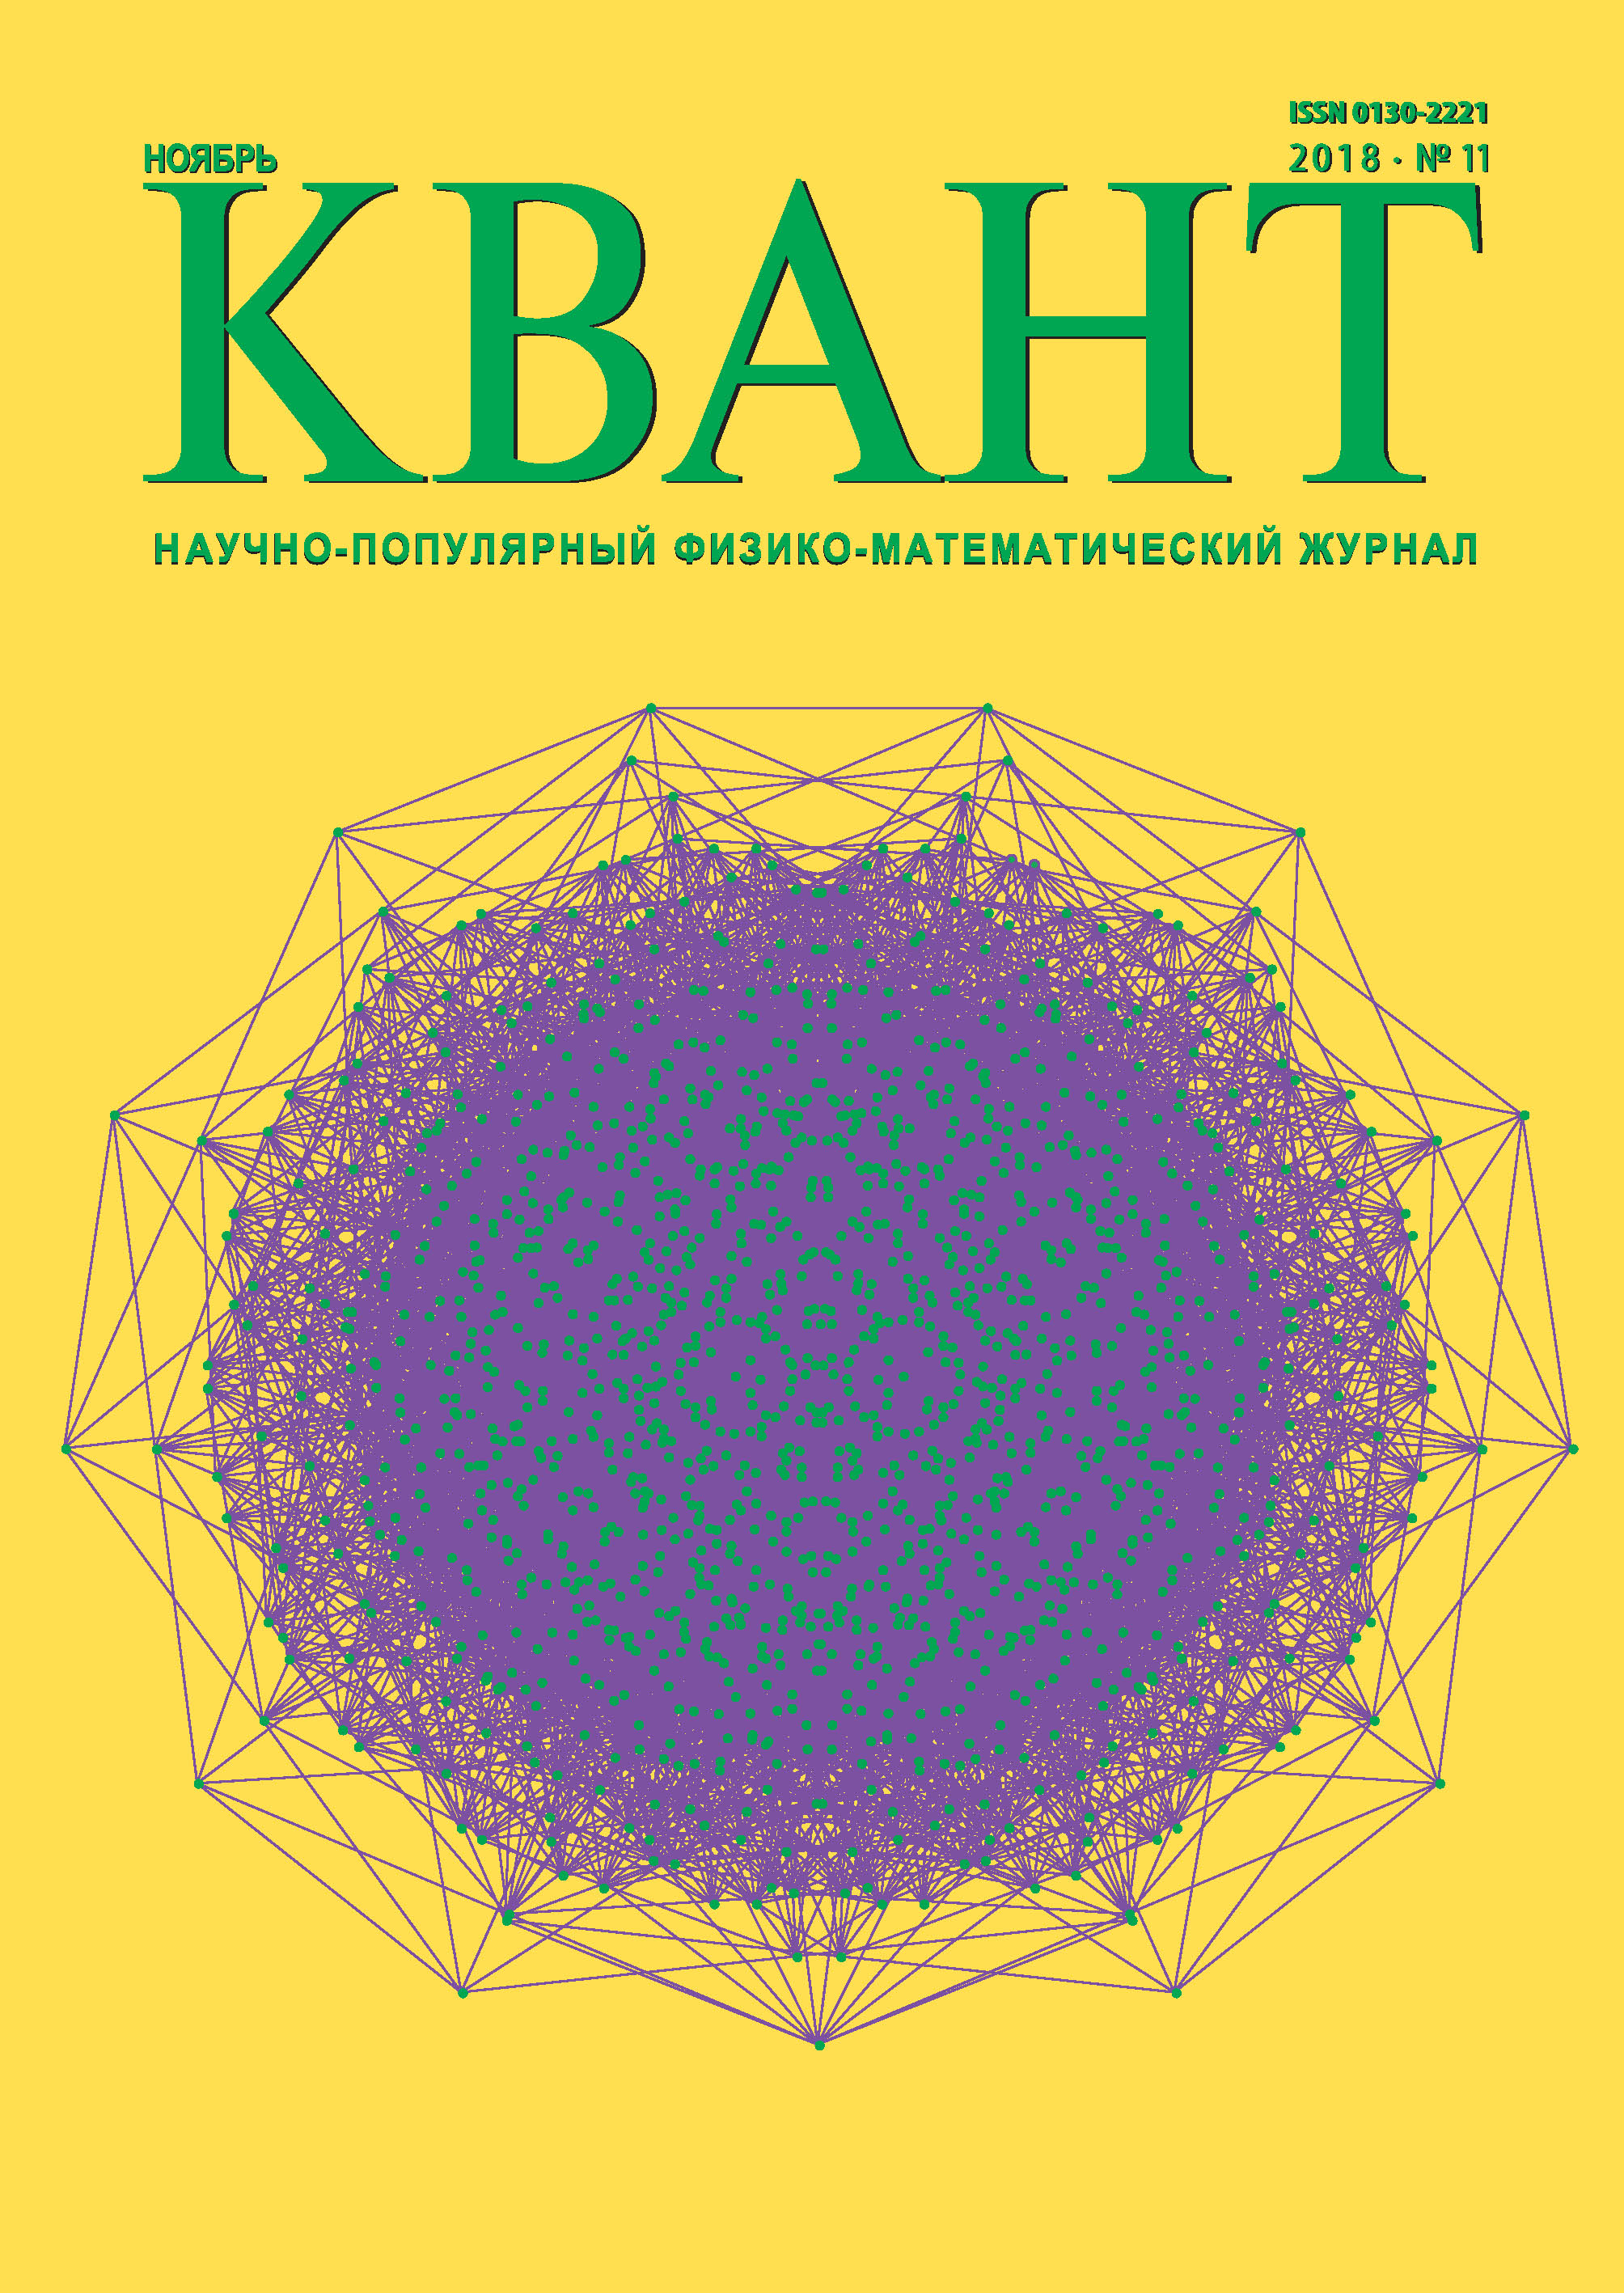 Произведения 2018 года. Журнал Квант. Научно-популярное издание. Физико математический журнал Квант. Научно-популярные журналы.